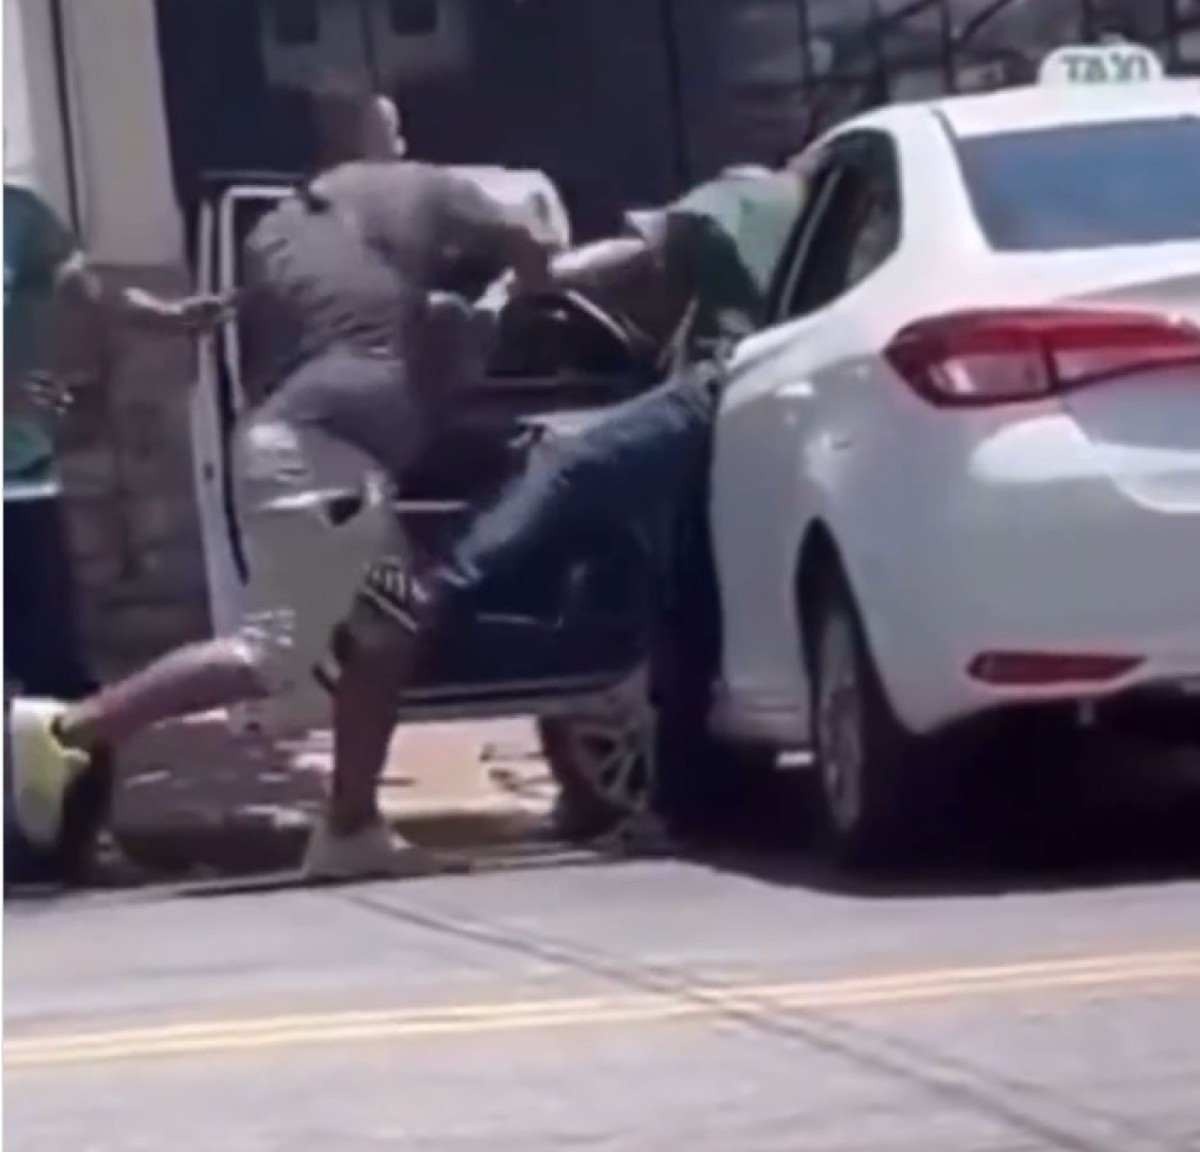  Vídeo: taxista é agredido com cabeçada, chutes e capacete em BH 